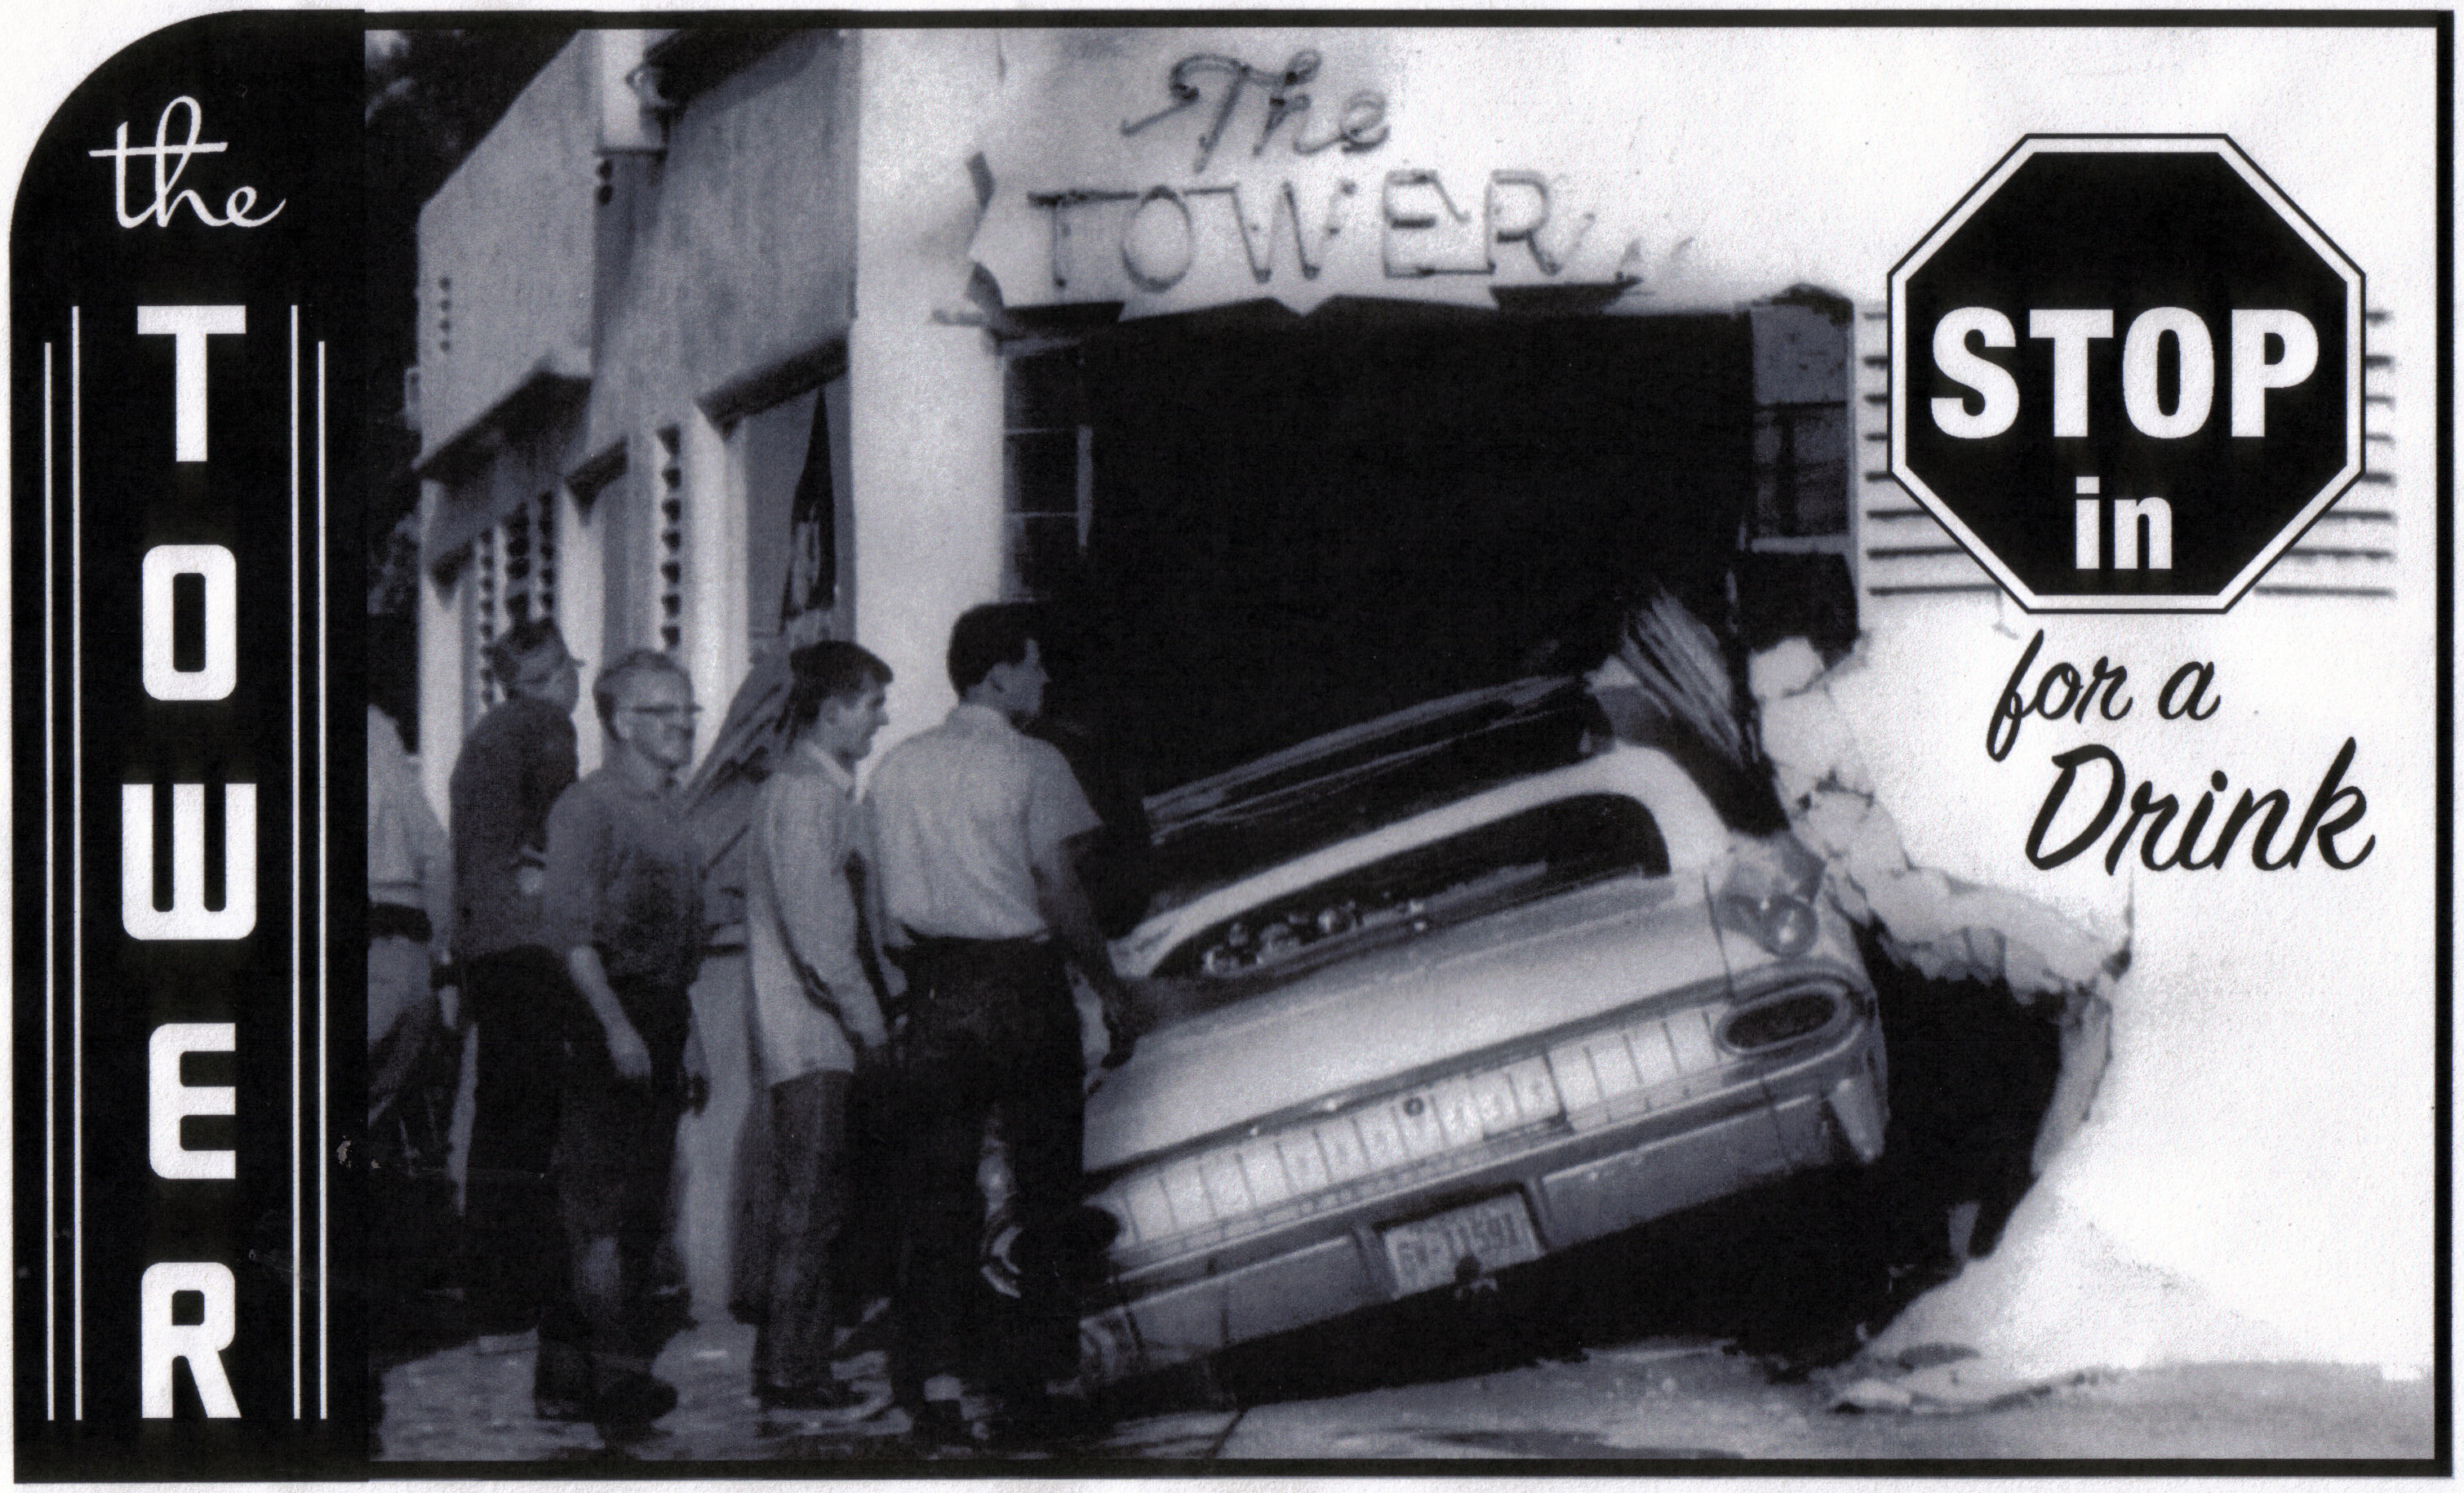 tower bar car crash 1964